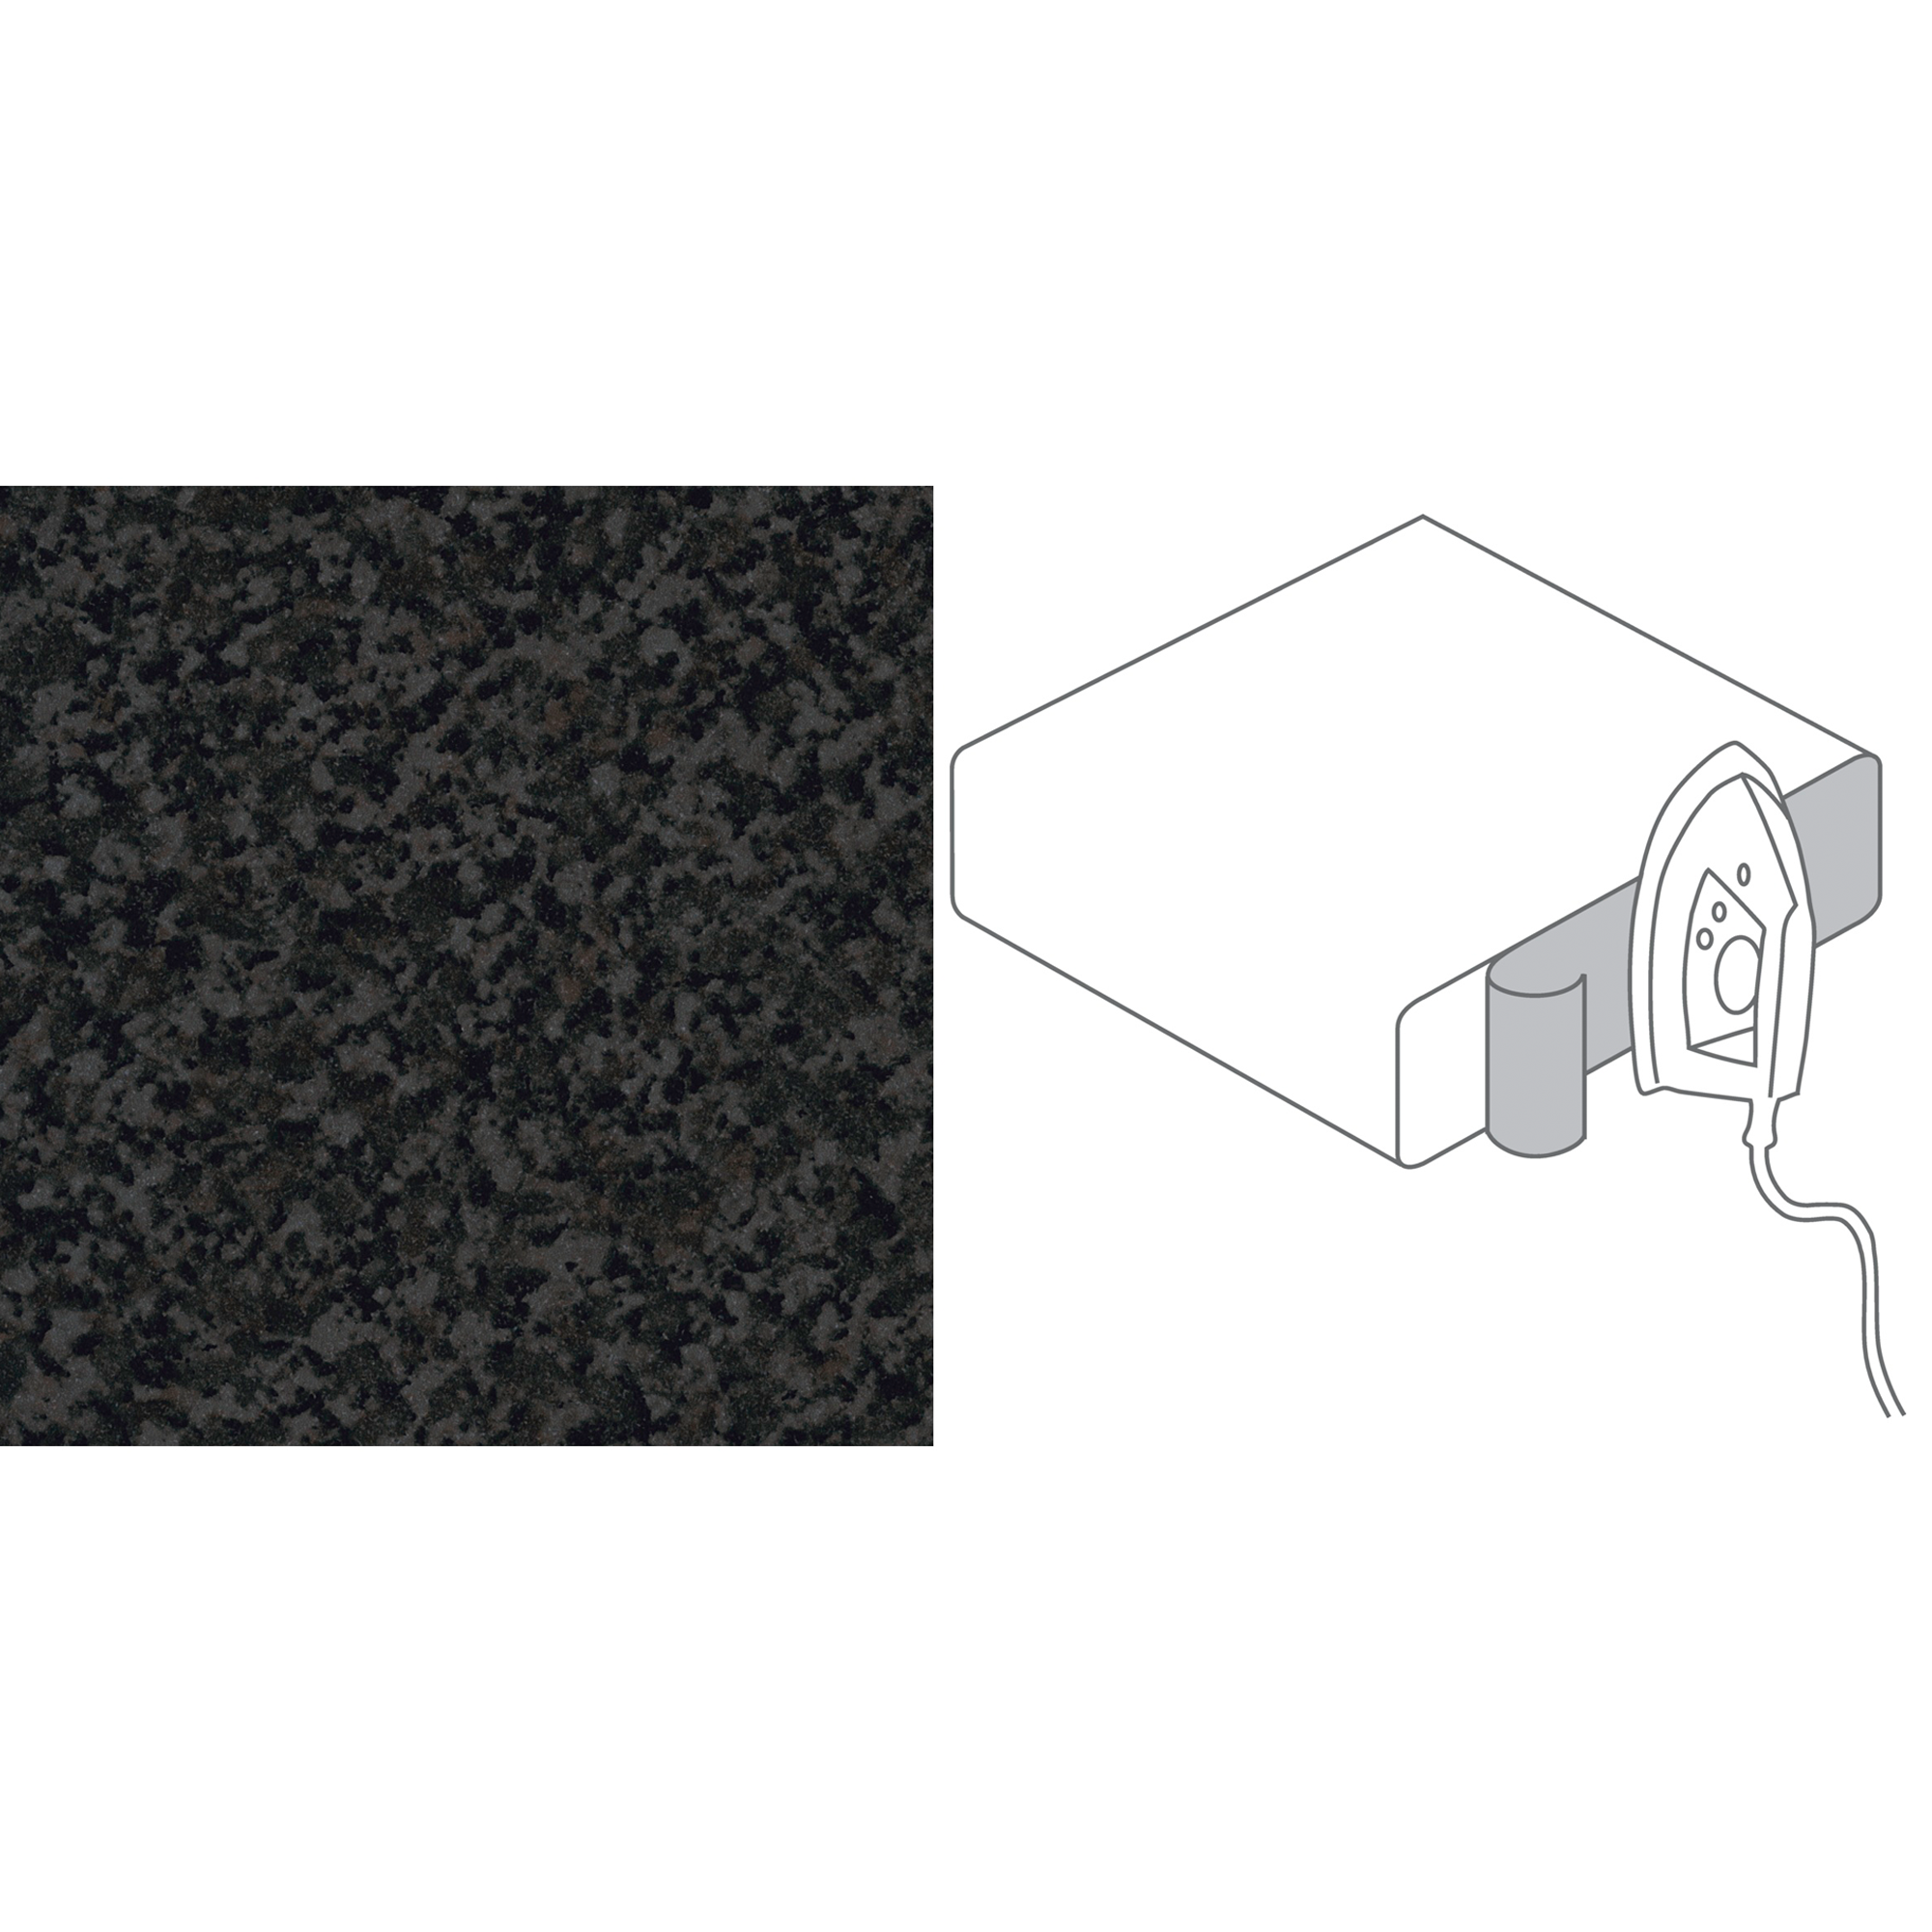 Umleimer Granit-Optik anthrazit 65 x 4,4 cm 2 Stück + product picture